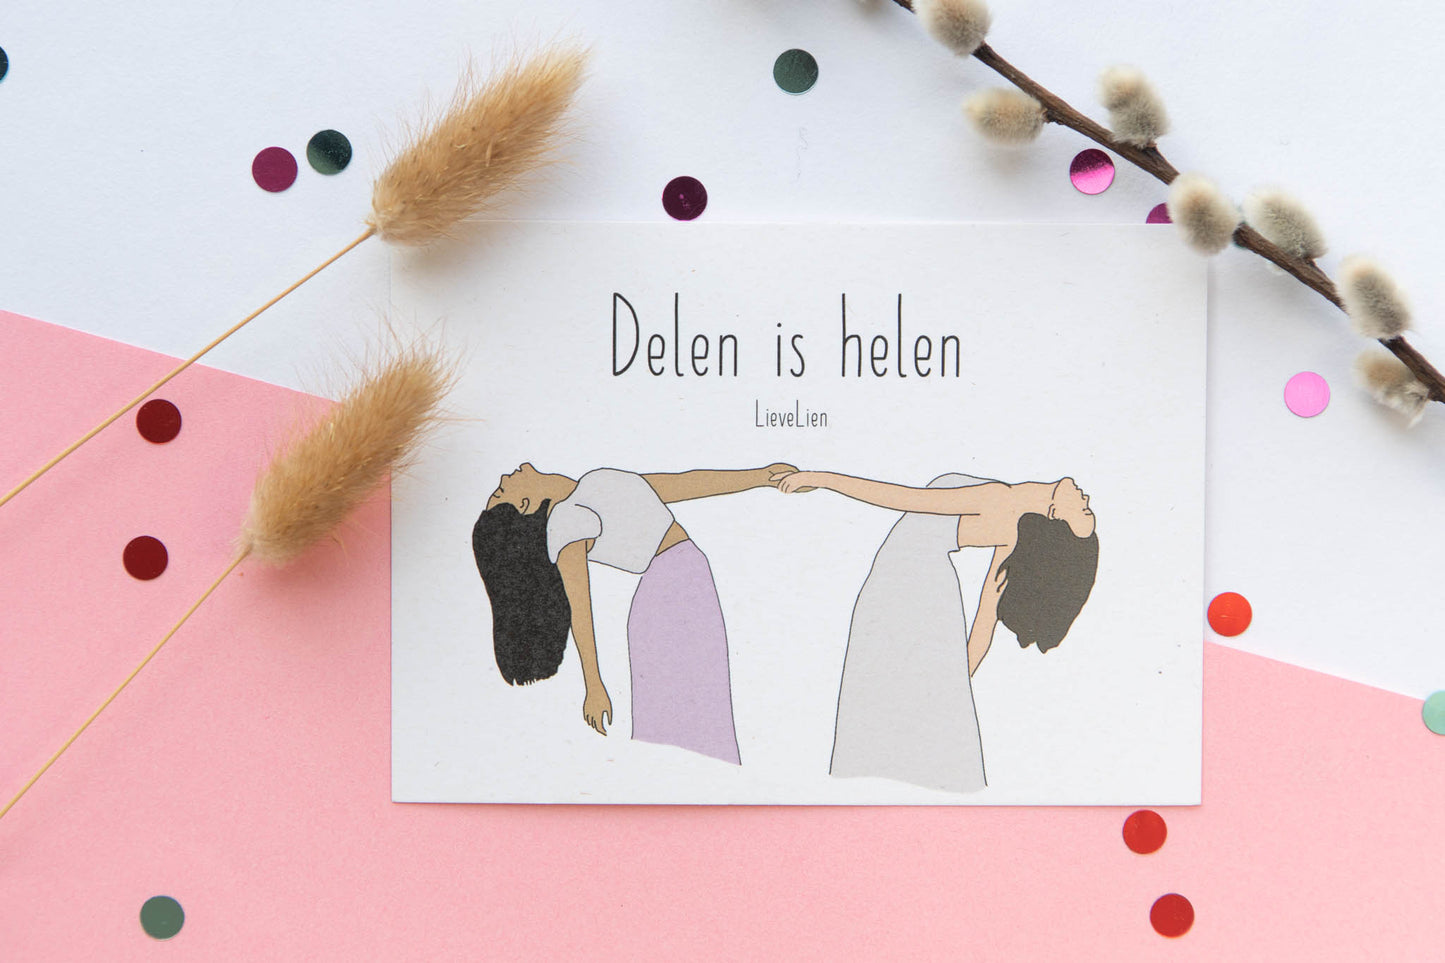 Delen is Helen